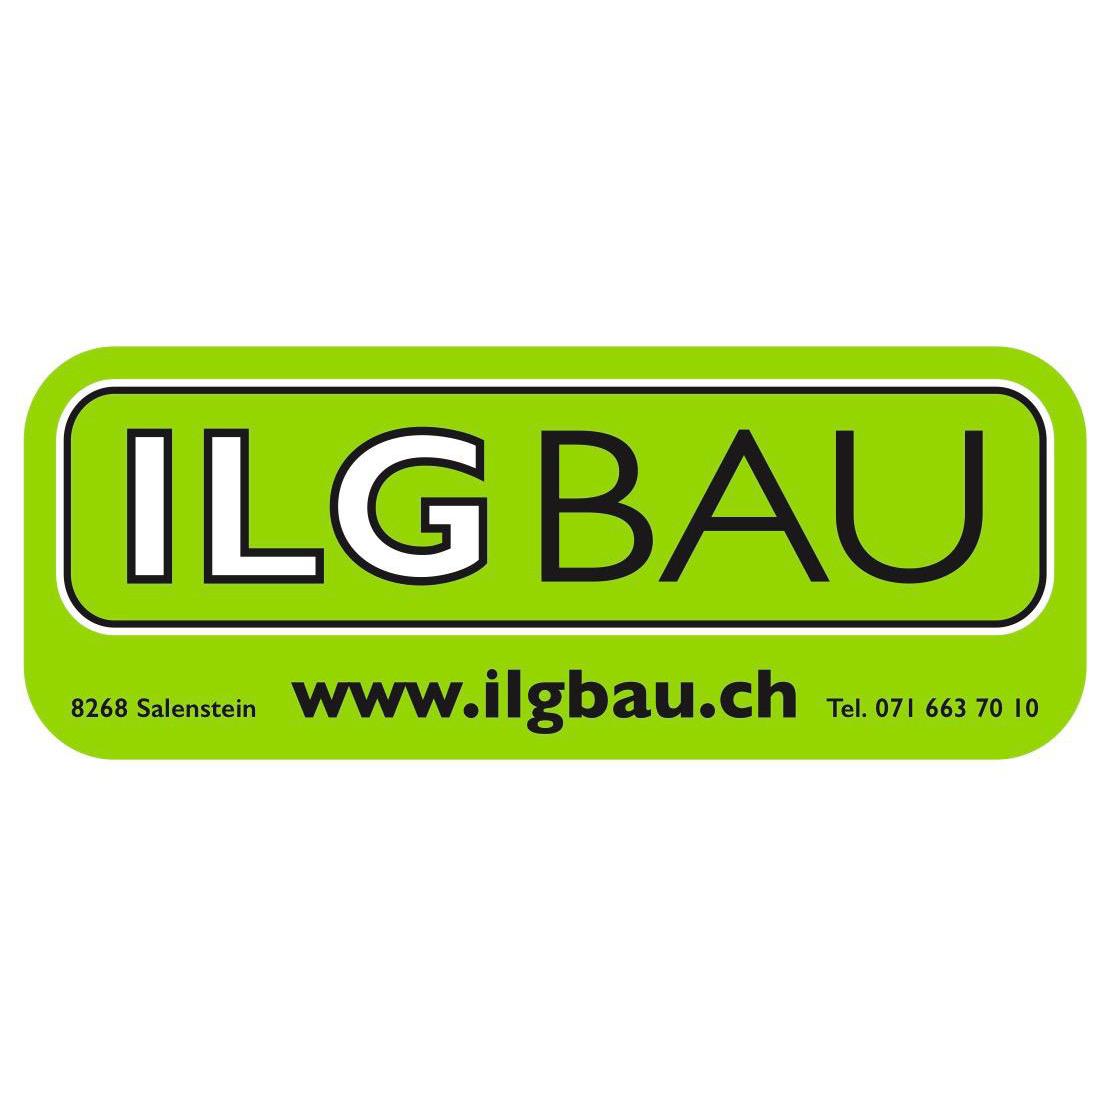 Ilg Bau AG Logo